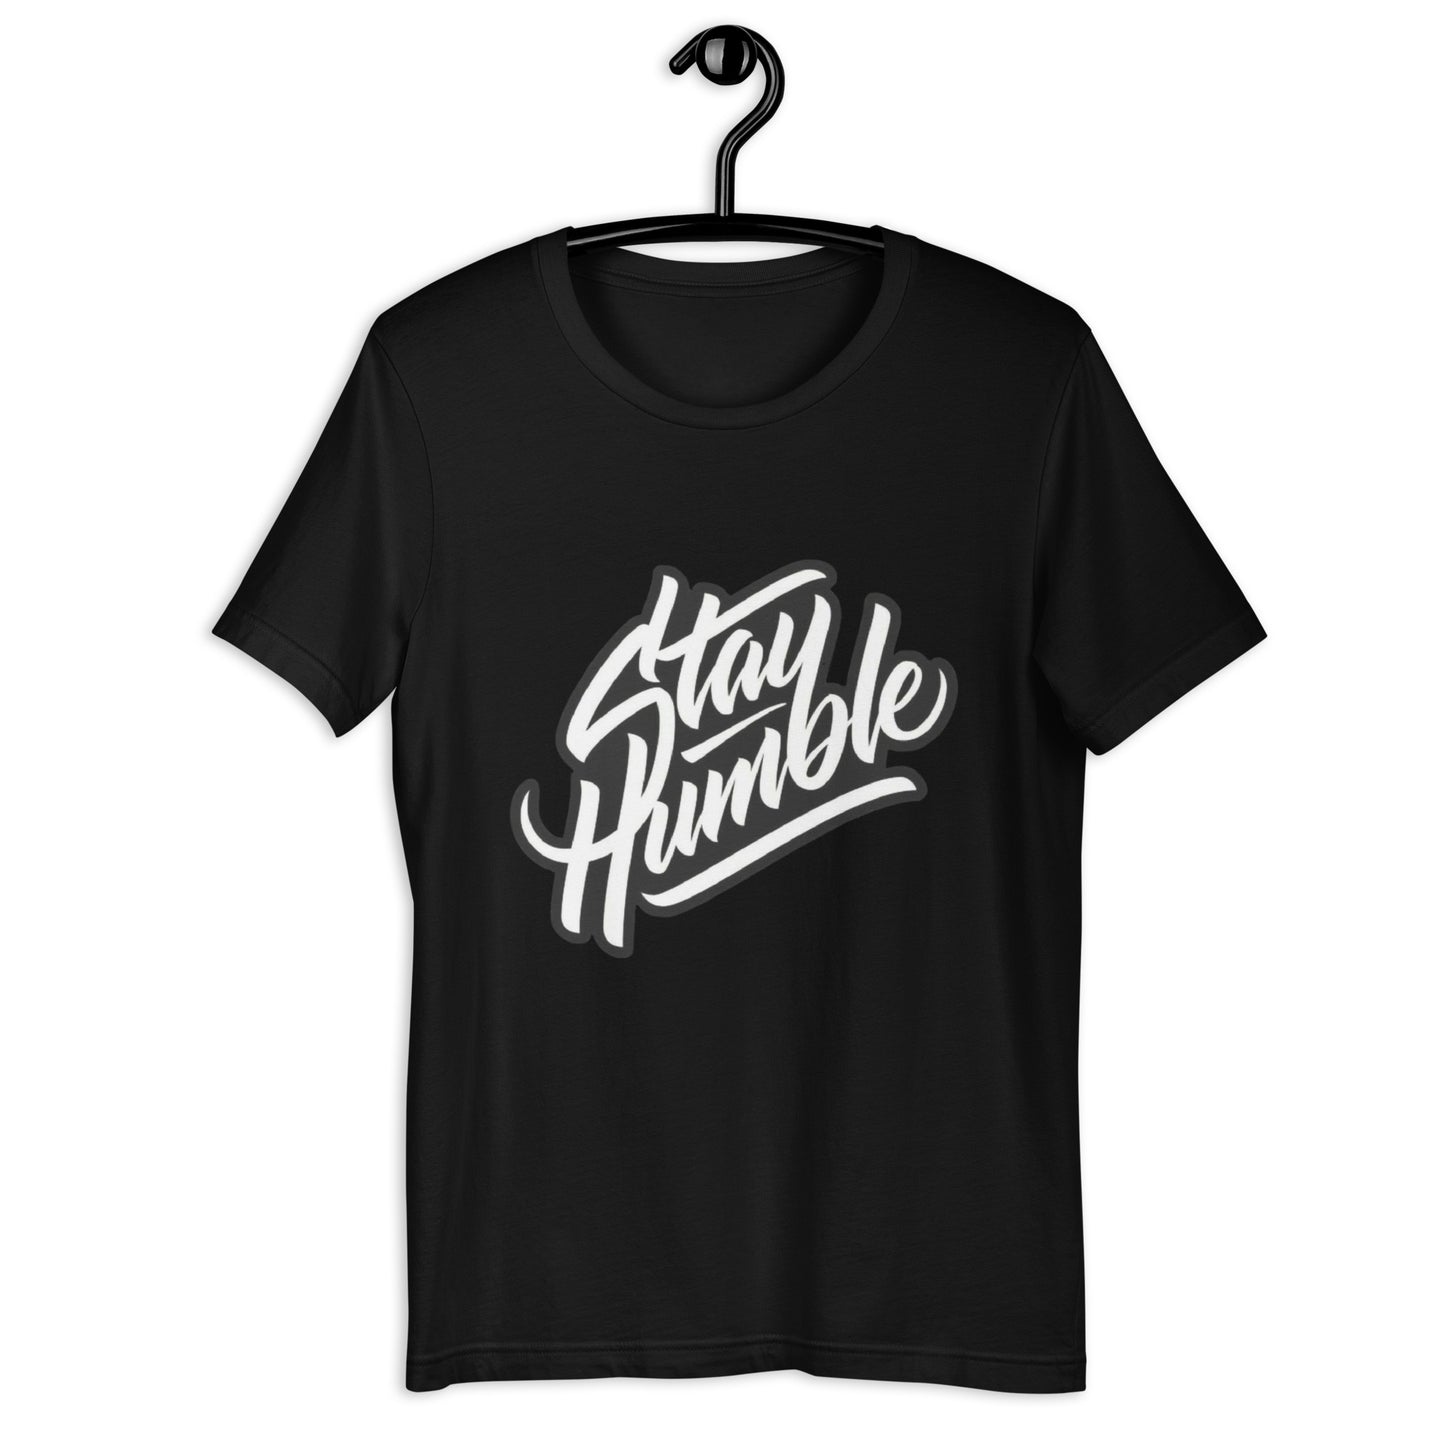 Stay Humble- Tee